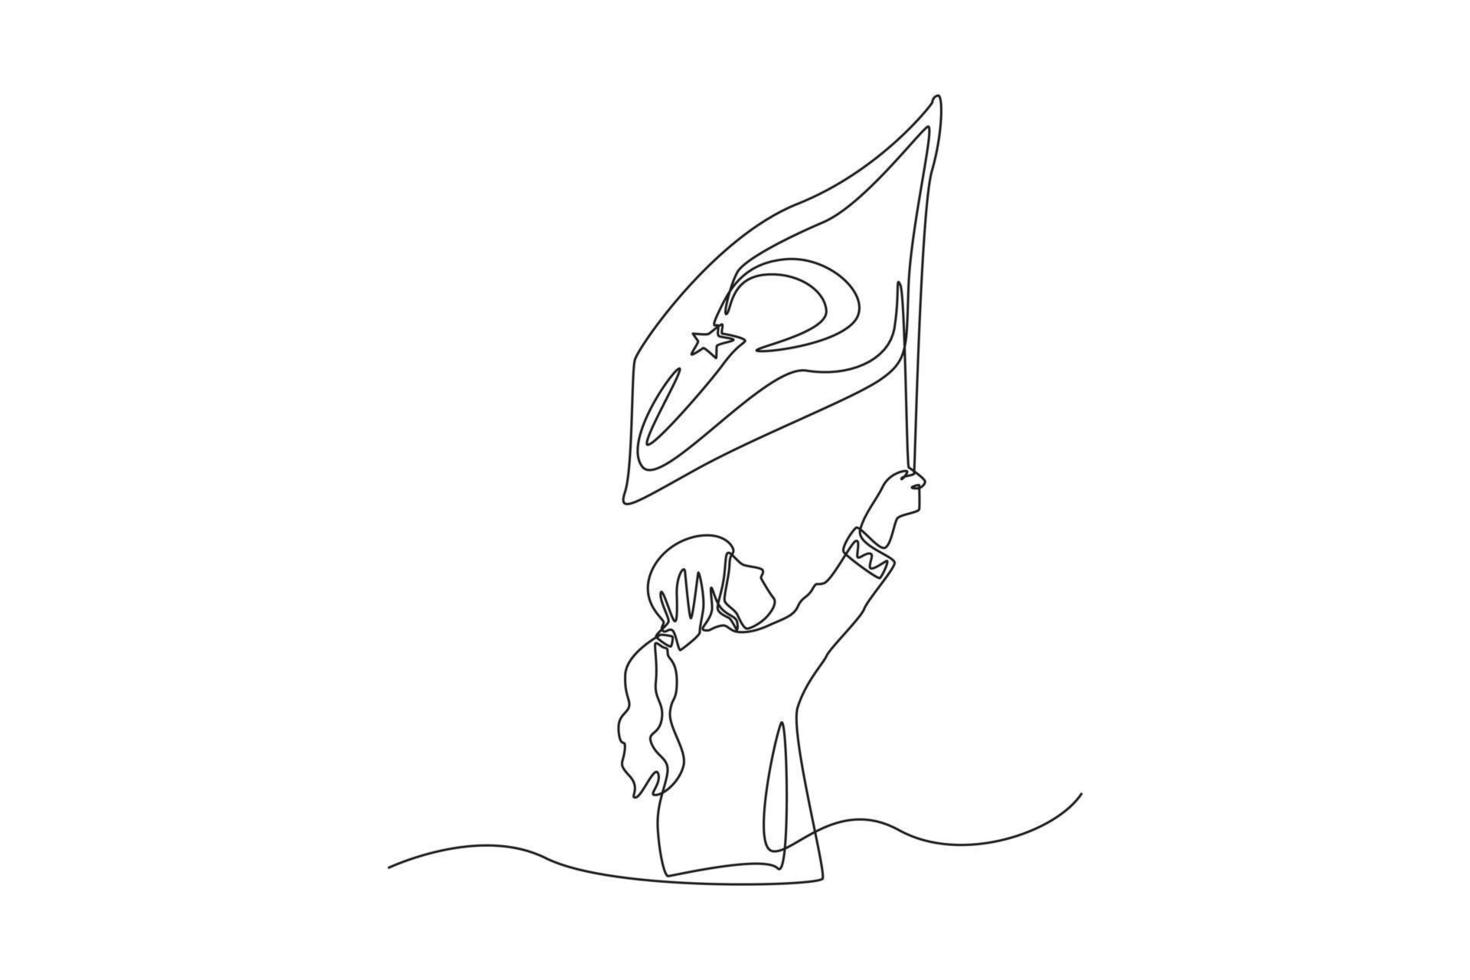 una sola línea dibujando a una joven que sostiene la bandera de turquía. concepto del día de la república de turquía. ilustración de vector gráfico de diseño de dibujo de línea continua.